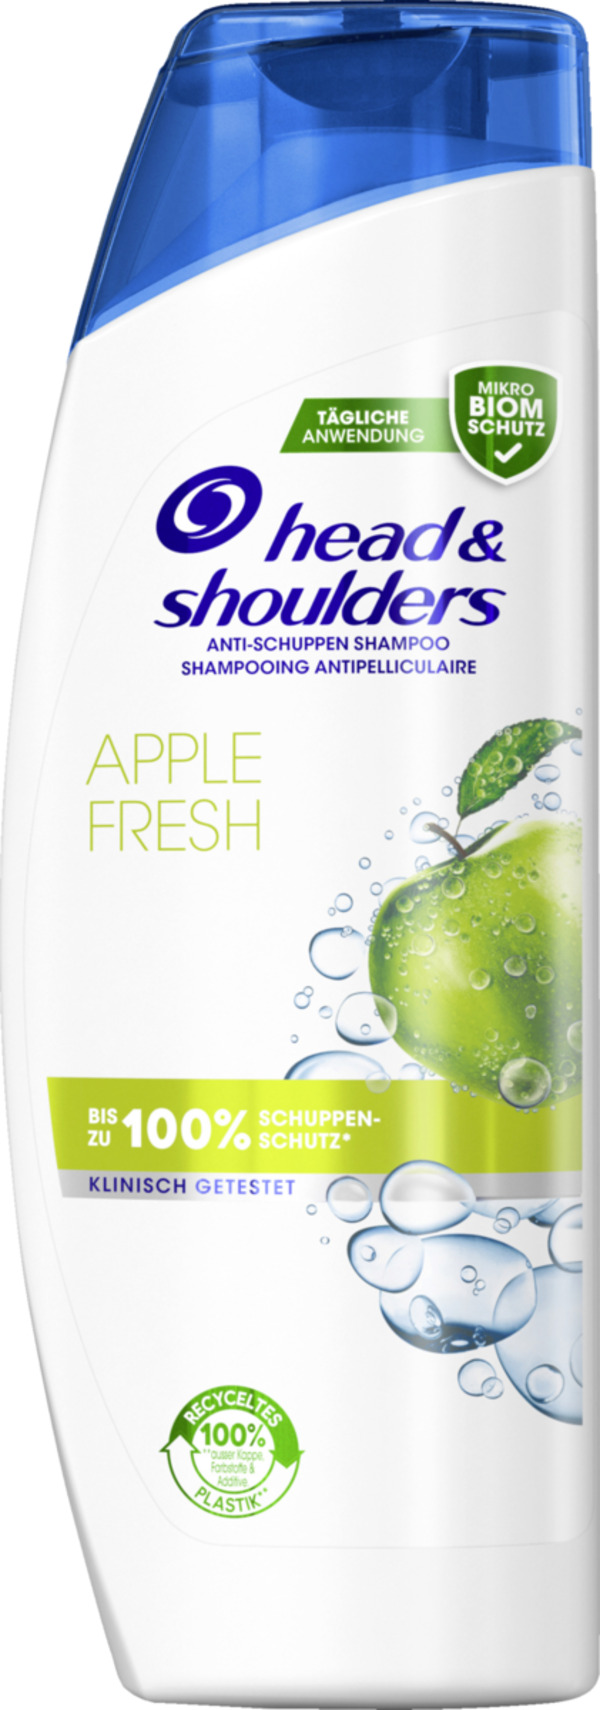 Bild 1 von head & shoulders Anti-Schuppen Shampoo Apple Fresh